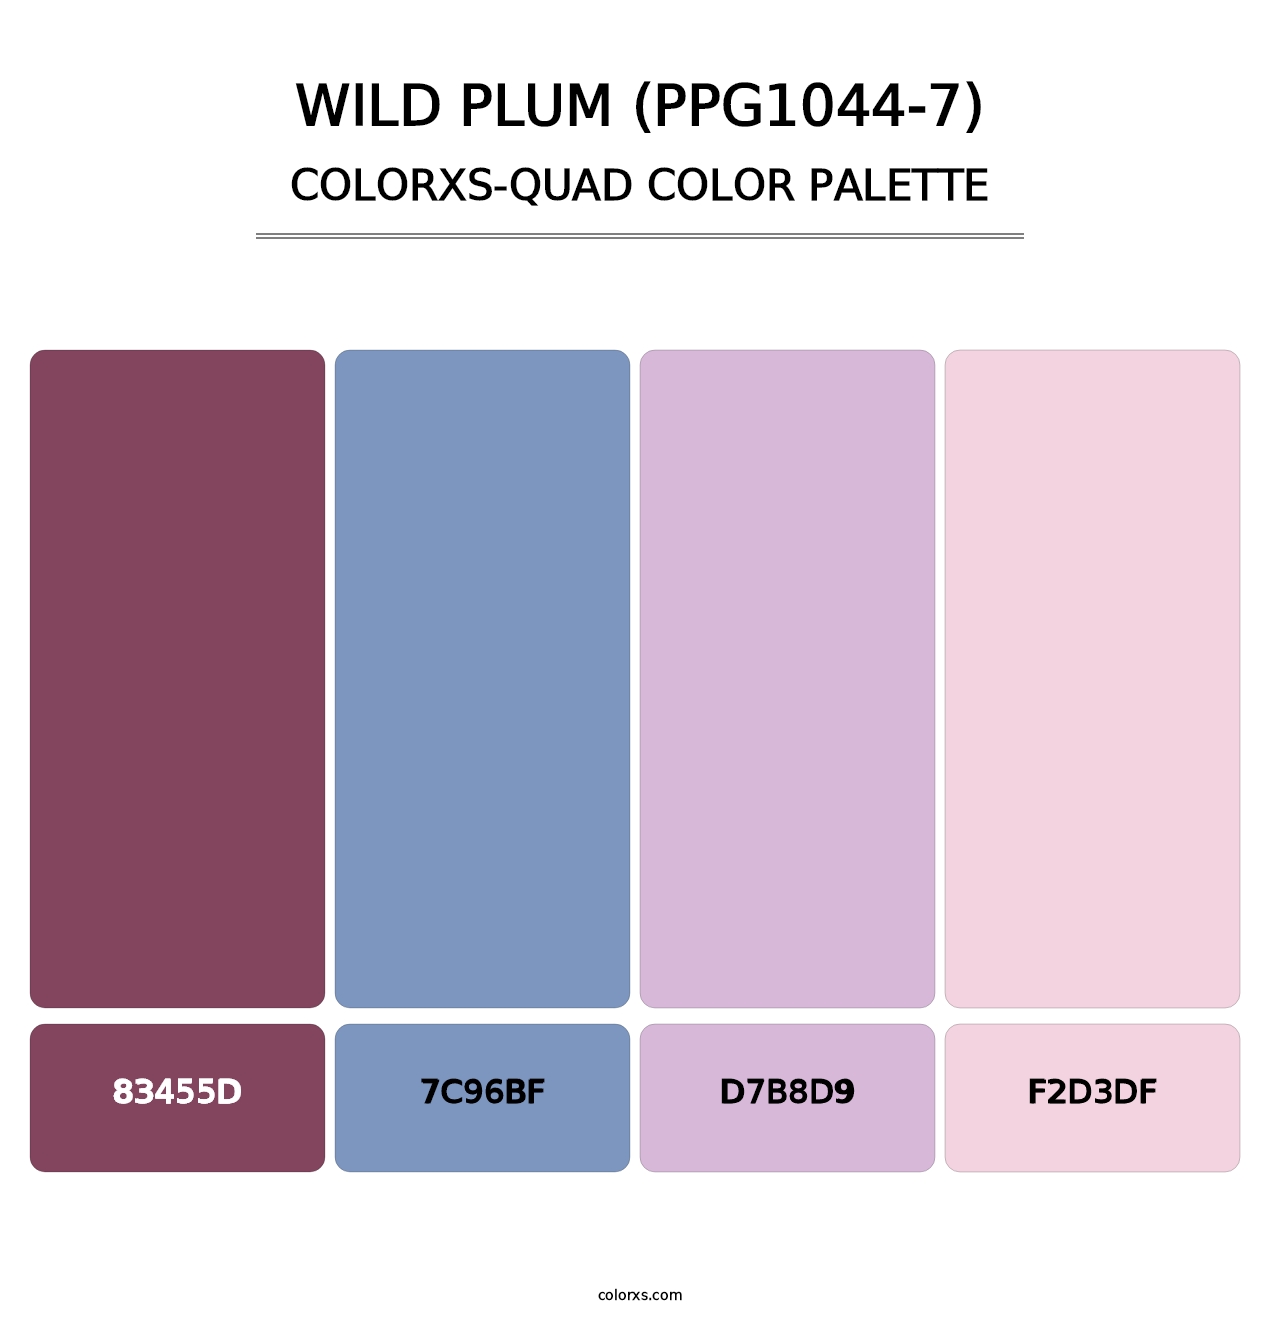 Wild Plum (PPG1044-7) - Colorxs Quad Palette